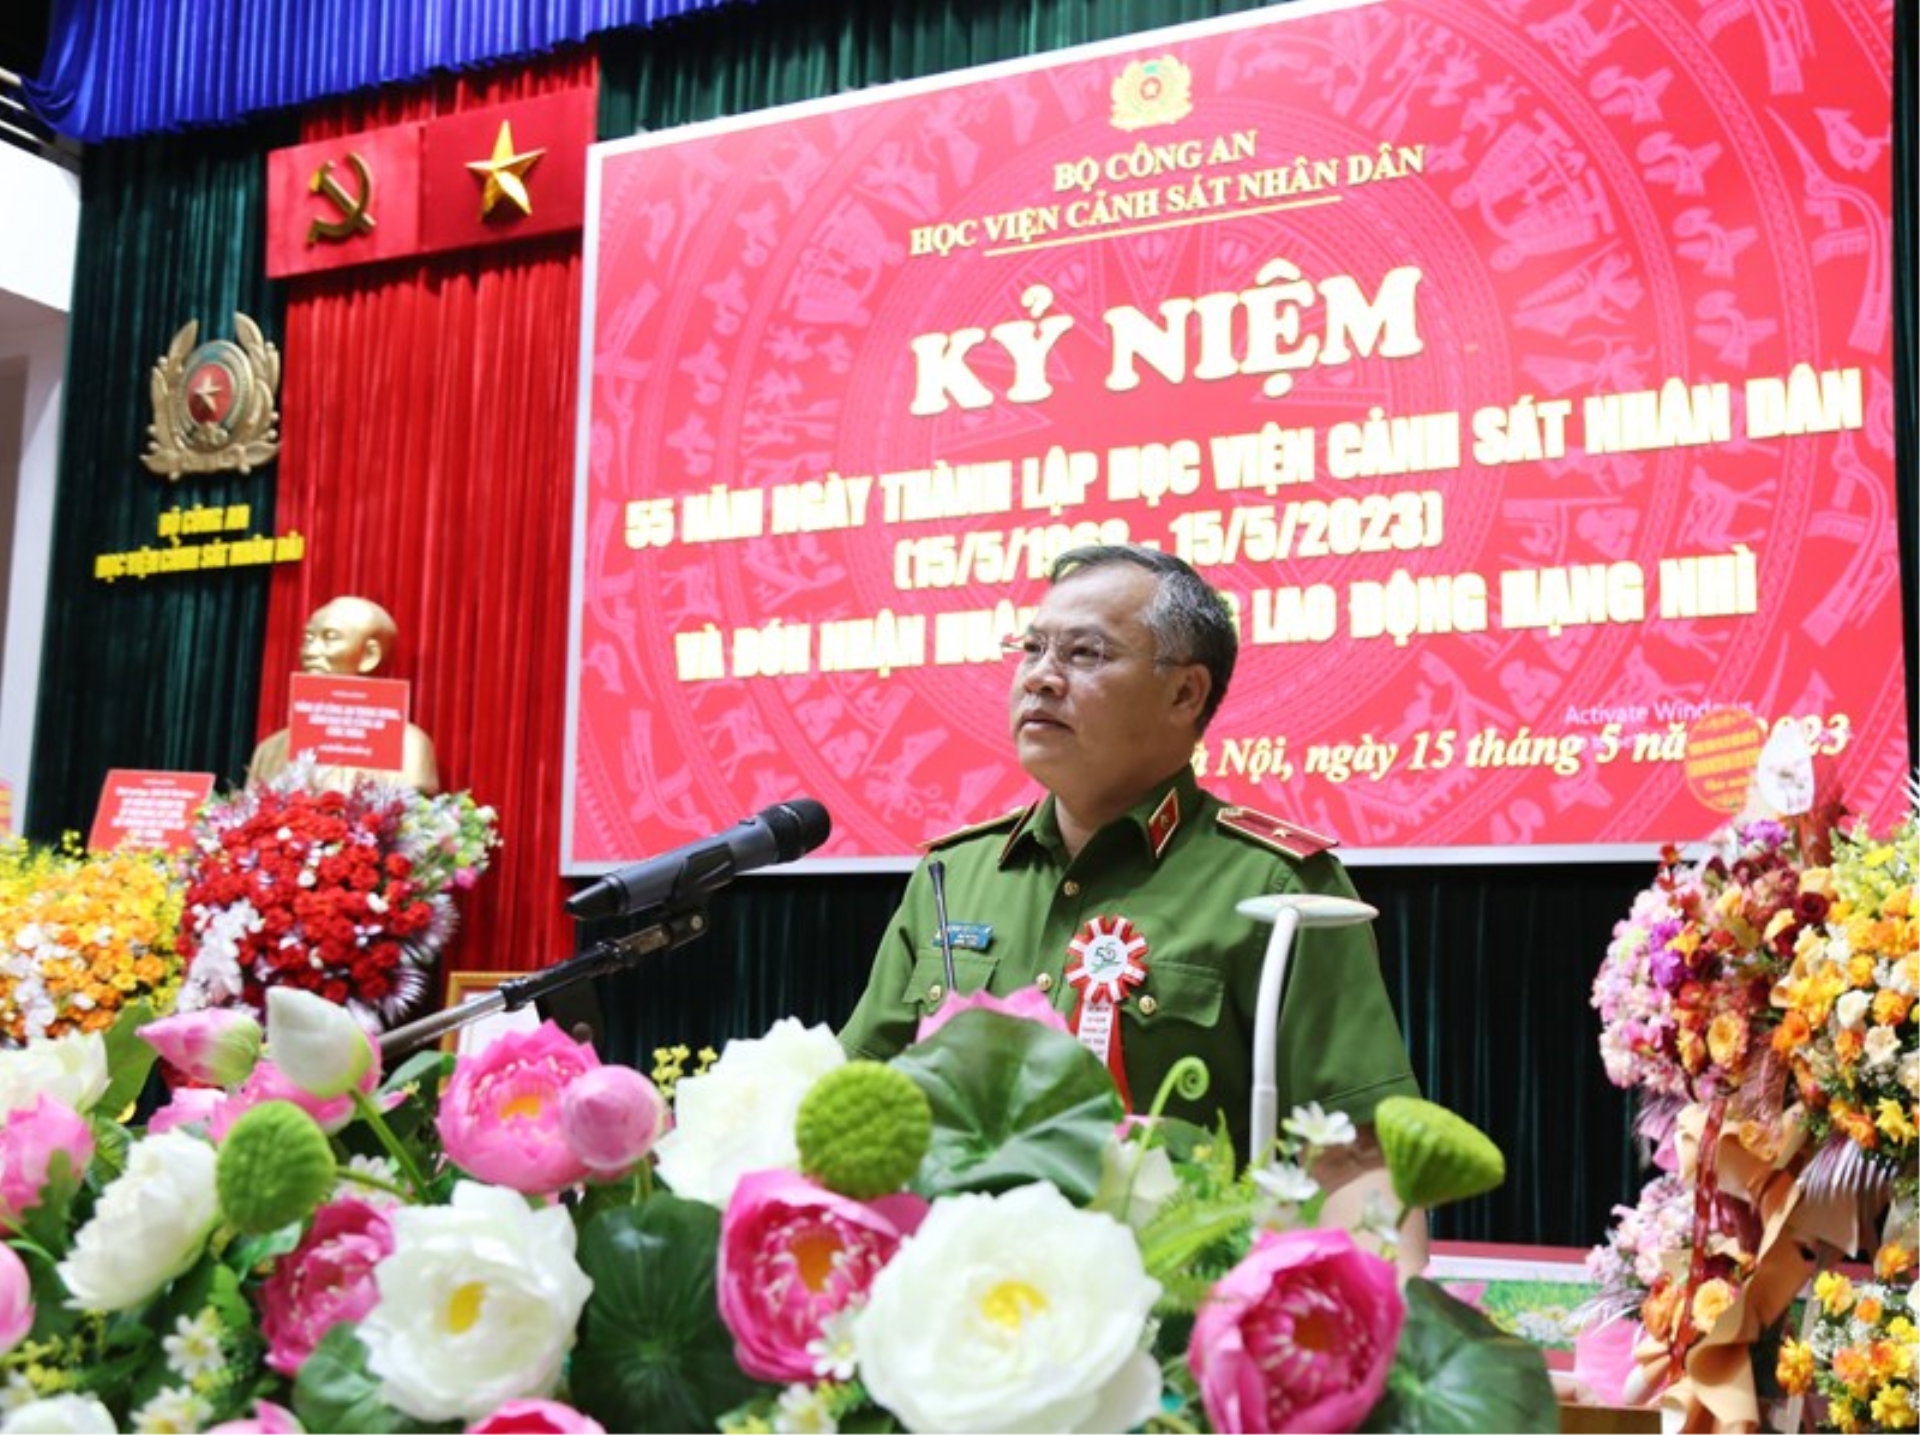 Thiếu tướng Nguyễn Văn Long, Thứ trưởng Bộ Công an phát biểu tại Lễ kỷ niệm